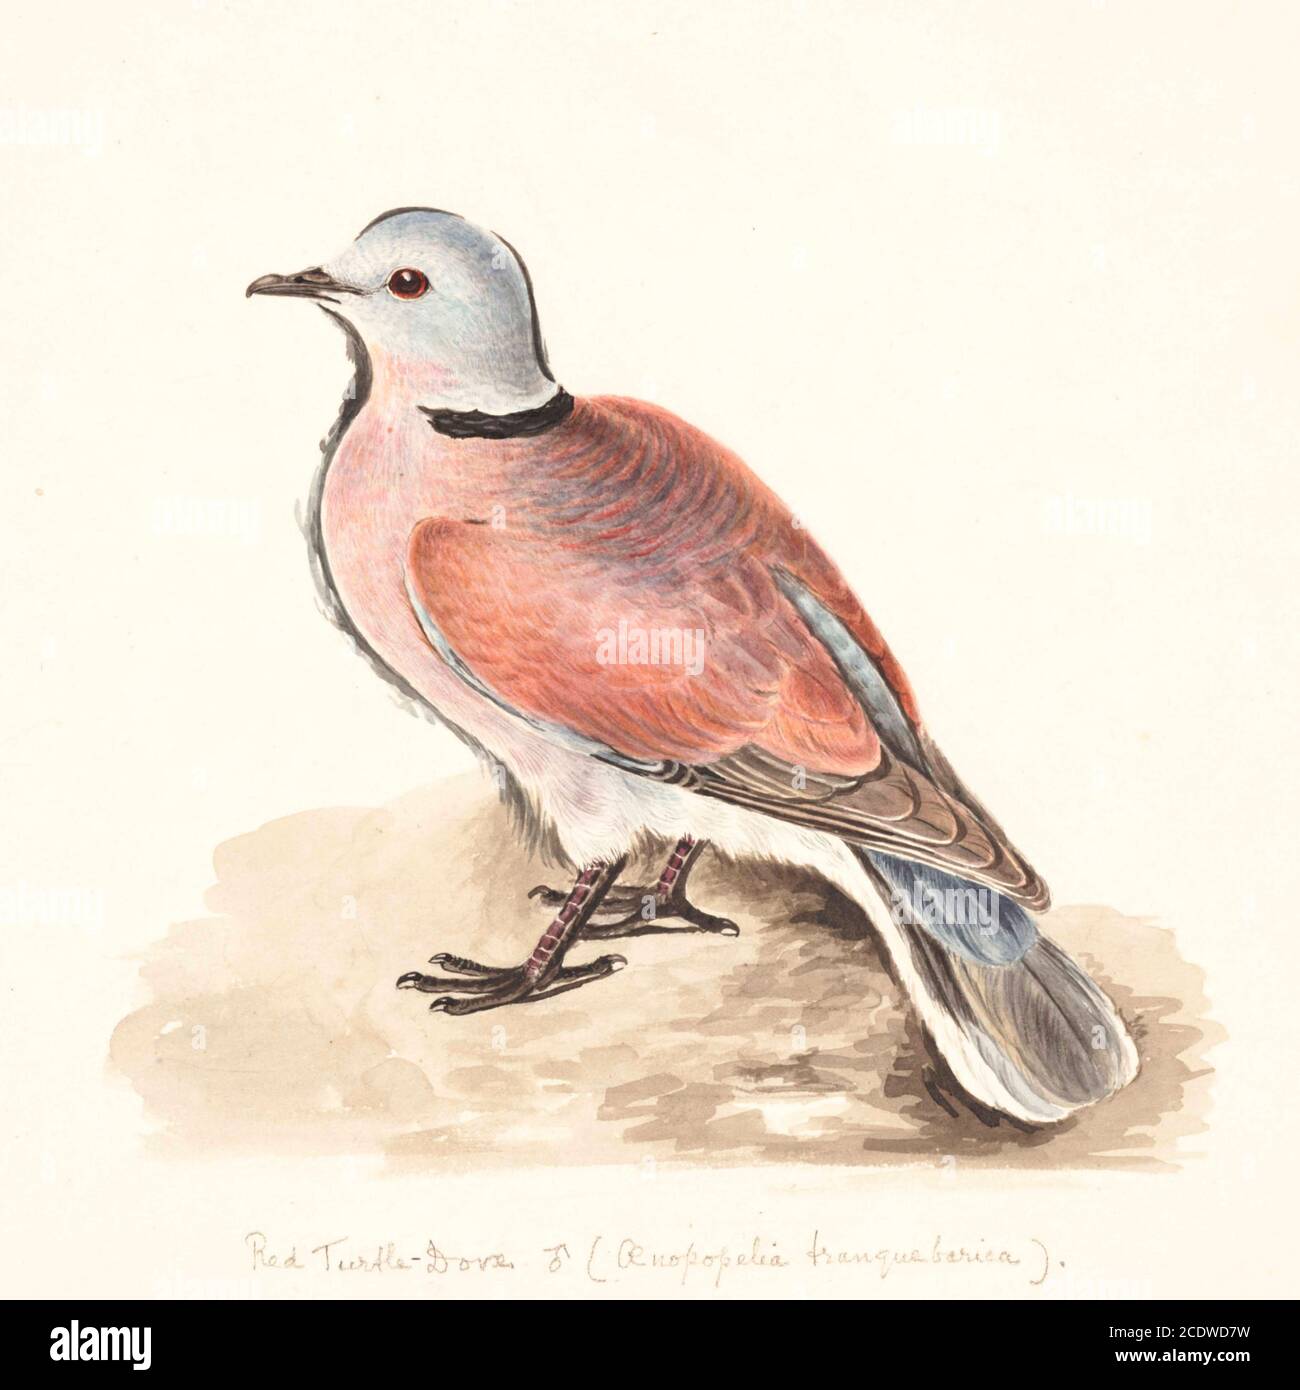 Die Rothalstaube (Streptopelia tranquebarica), auch als Rotschildtaube bekannt, ist eine kleine Taube, die in den Tropen Asiens beheimatet ist. Das Männchen hat einen blau-grauen Kopf und einen rot-braunen Körper. Das Weibchen ist viel plainer, mit hellbraunem Gefieder. Aquarellmalerei aus dem 18. Jahrhundert von Elizabeth Gwillim. Lady Elizabeth Symonds Gwillim (21. April 1763 – 21. Dezember 1807) war eine Künstlerin, die bis 1808 mit Sir Henry Gwillim, dem Puisne-Richter am Madras-Hofe, verheiratet war. Lady Gwillim malte eine Serie von etwa 200 Aquarellen von indischen Vögeln. Produziert etwa 20 Jahre vor John James Au Stockfoto